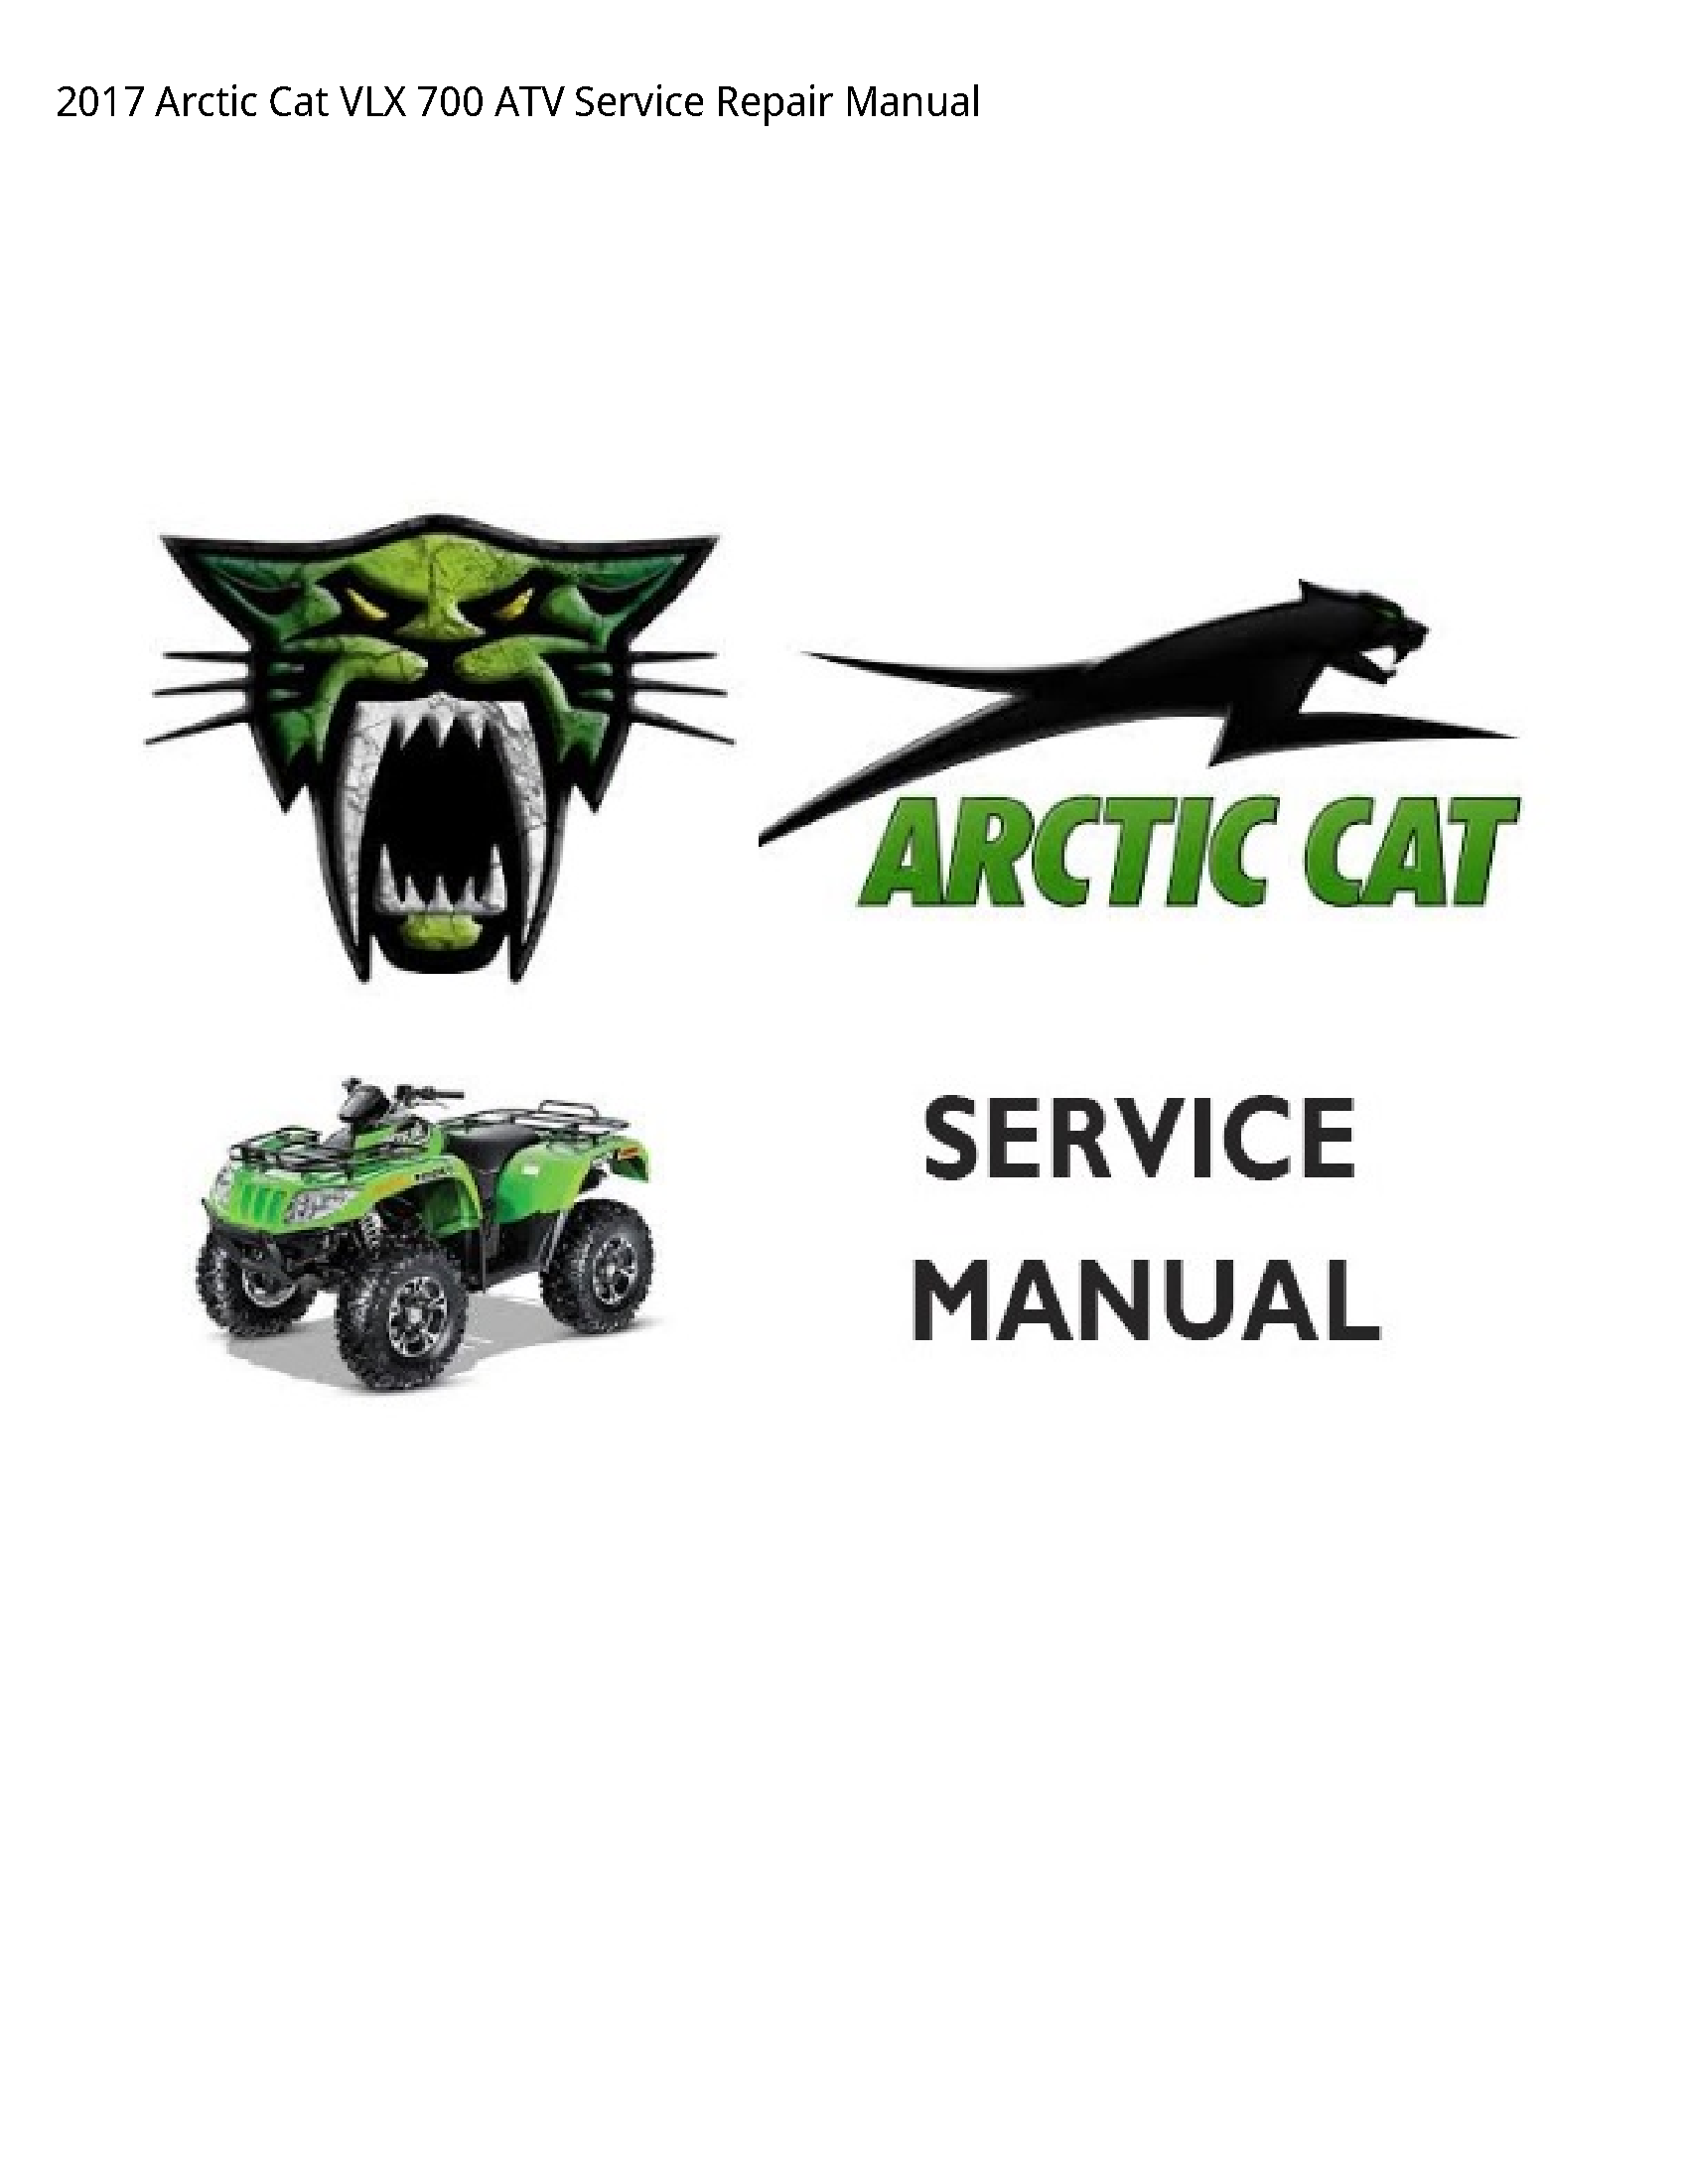 Arctic Cat 700 VLX ATV manual